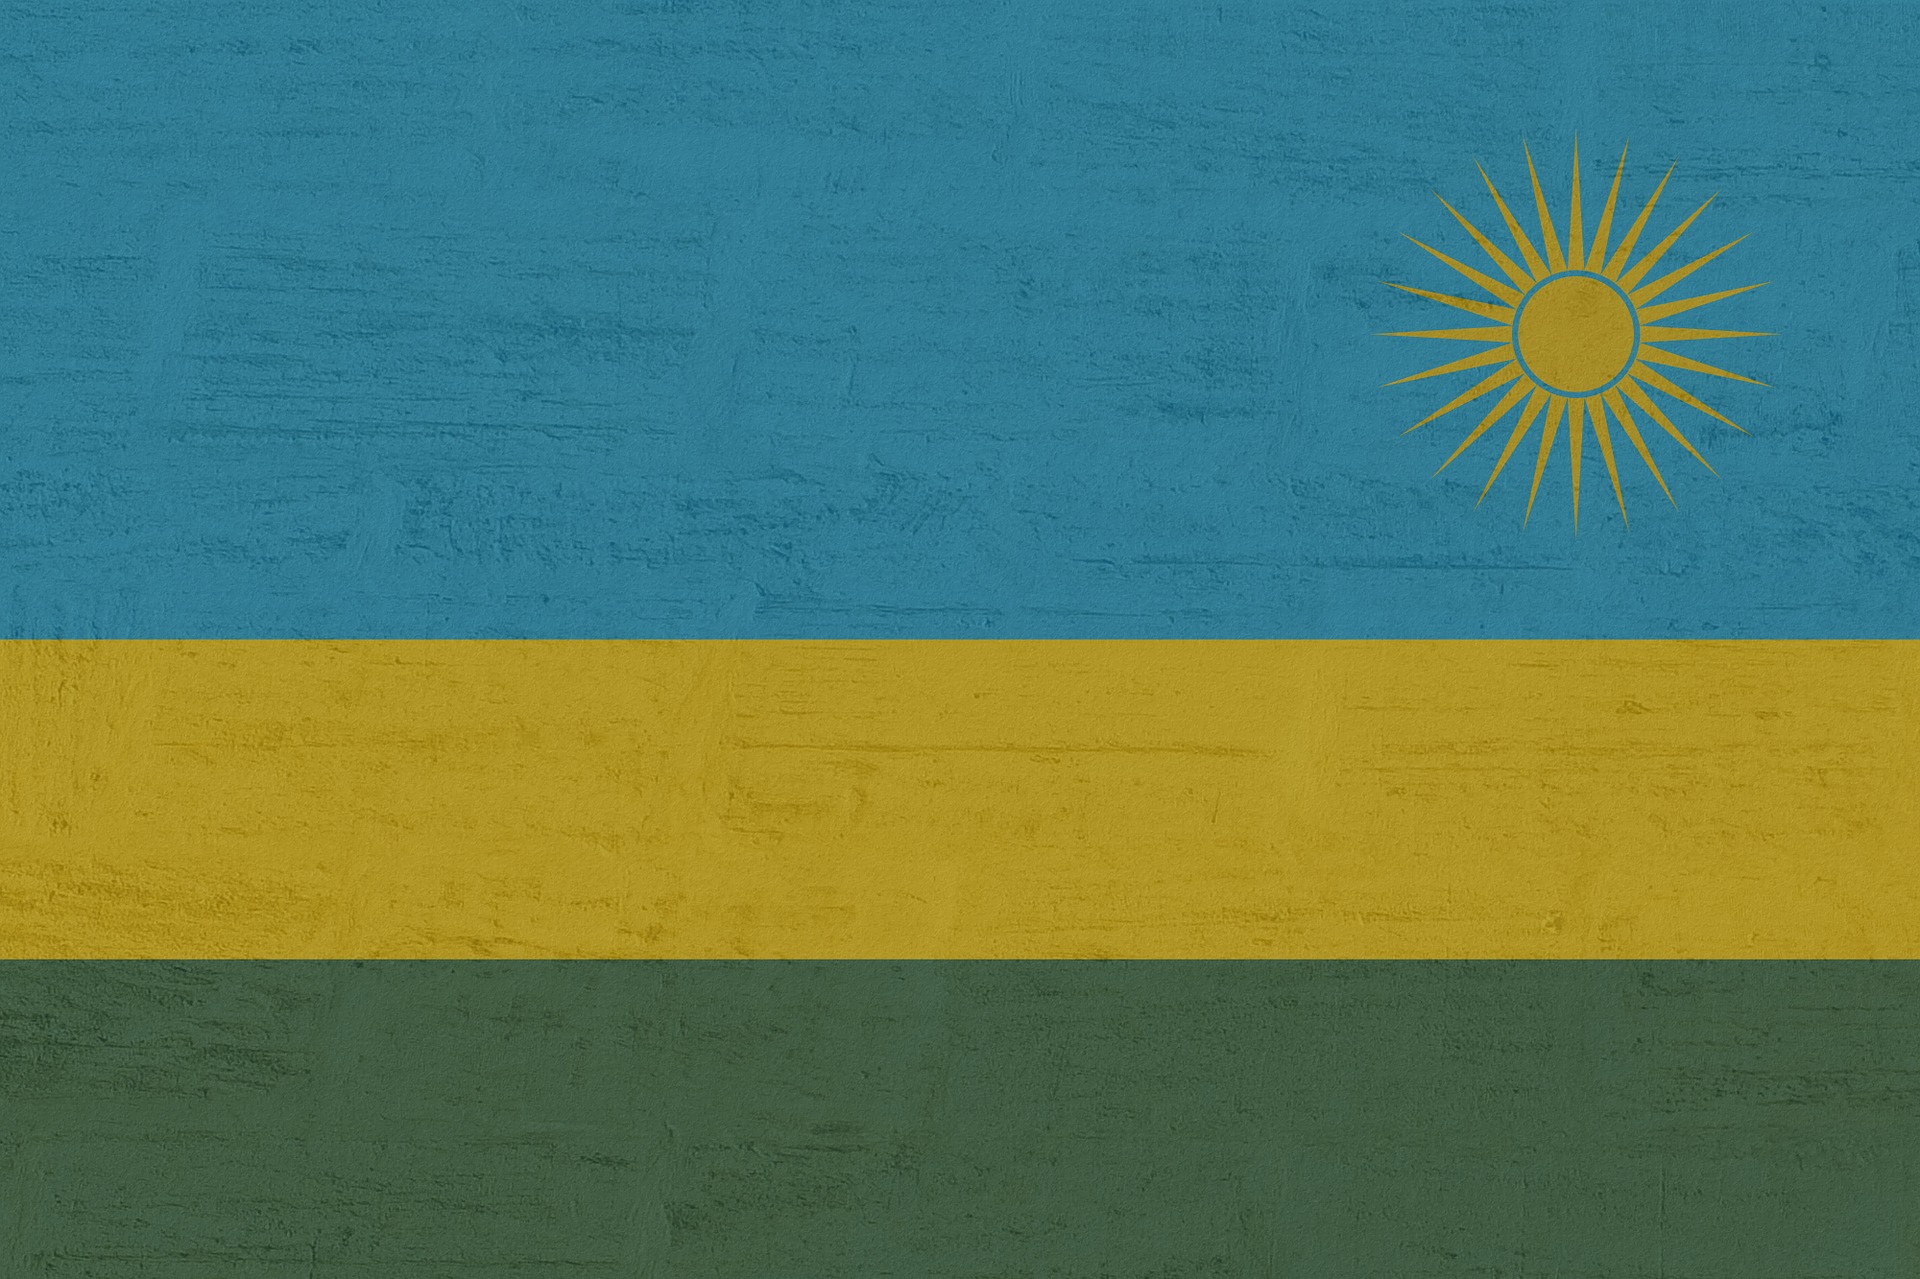 Ruanda reconvierte un pantano en una atracción del ecoturismo